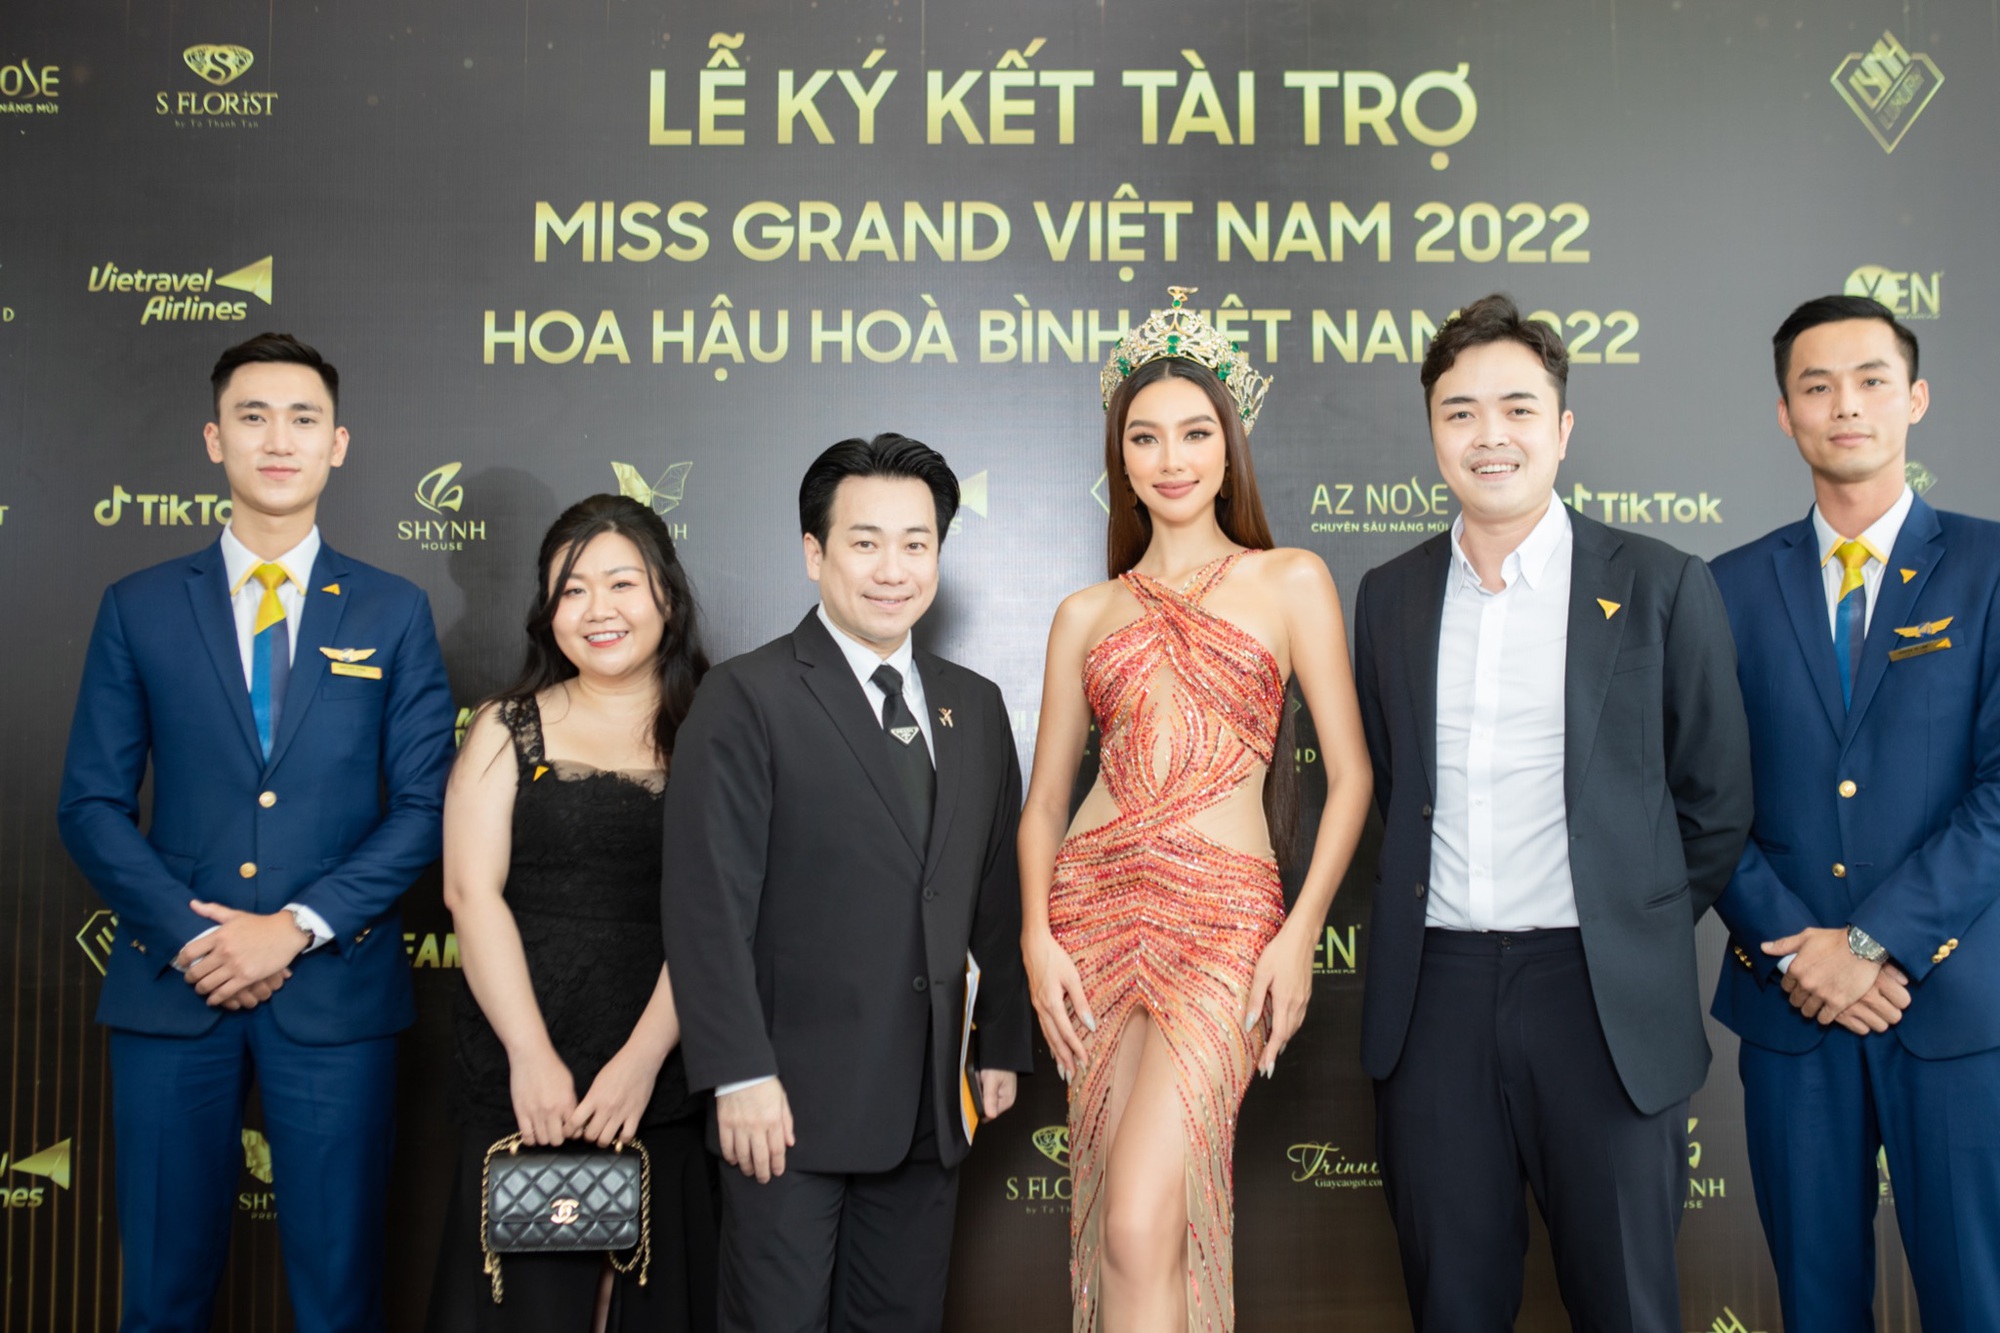 Vietravel Airlines - Đơn vị vận chuyển hàng không chính thức Miss Grand Vietnam 2022-3